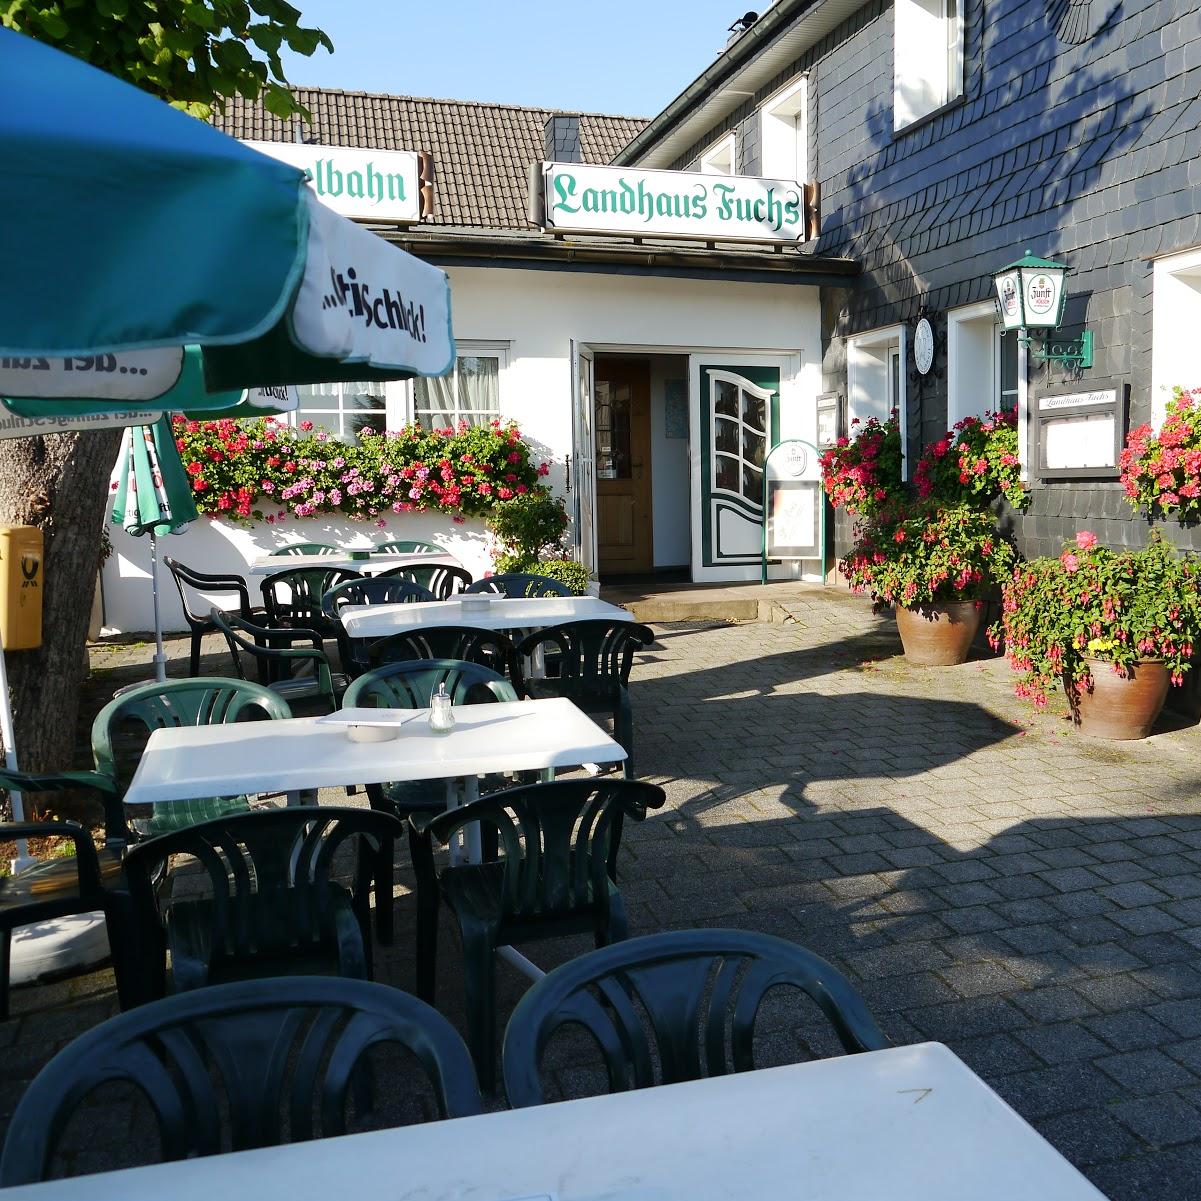 Restaurant "Hotel Café Restaurant Landhaus Fuchs" in Kürten